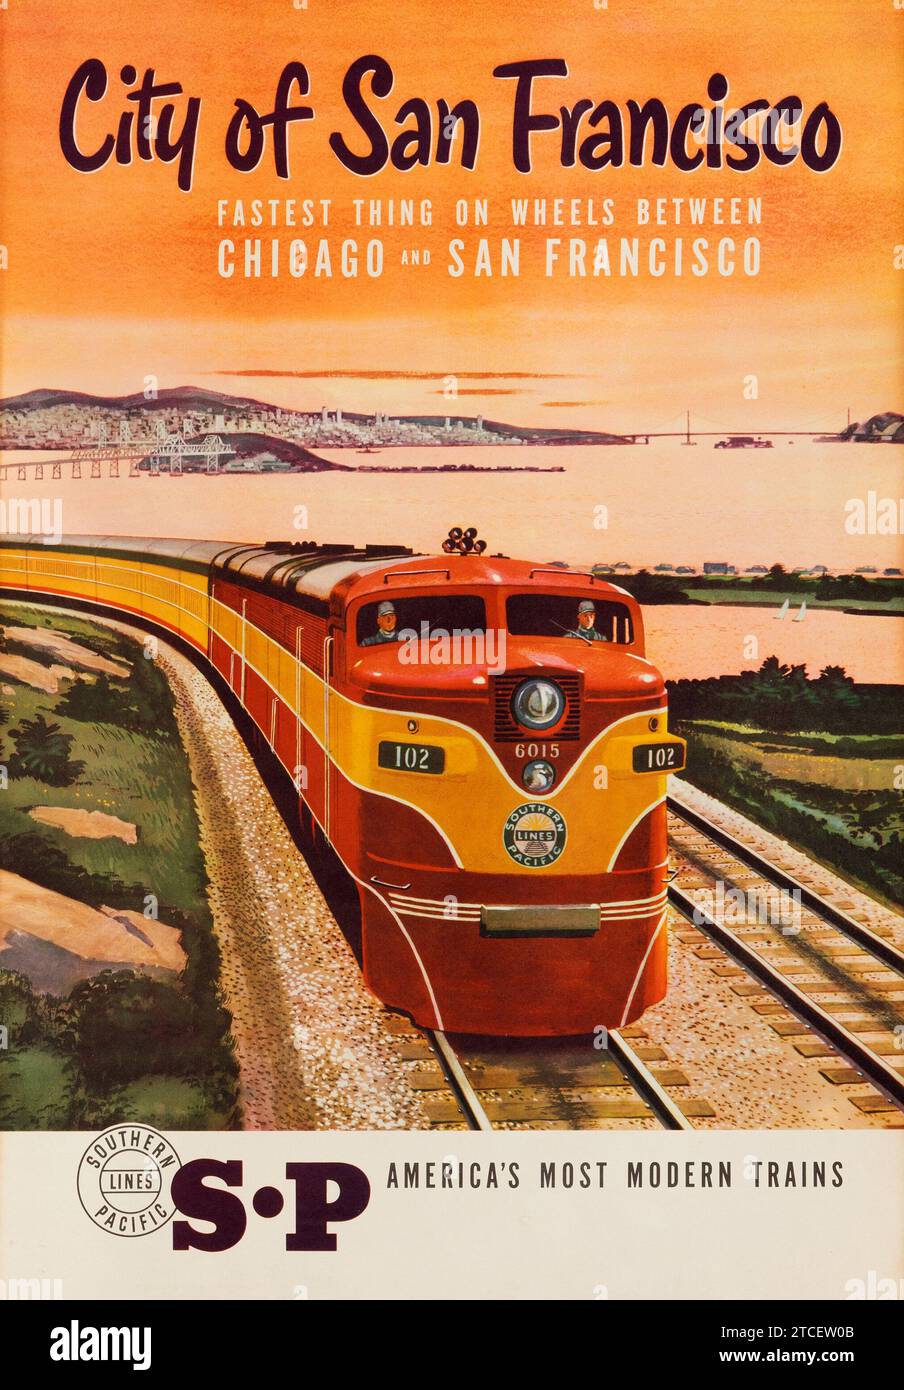 Southern Pacific - città di San Francisco (1950 circa). American Travel poster "la cosa più veloce su ruote tra Chicago e San Francisco". Foto Stock